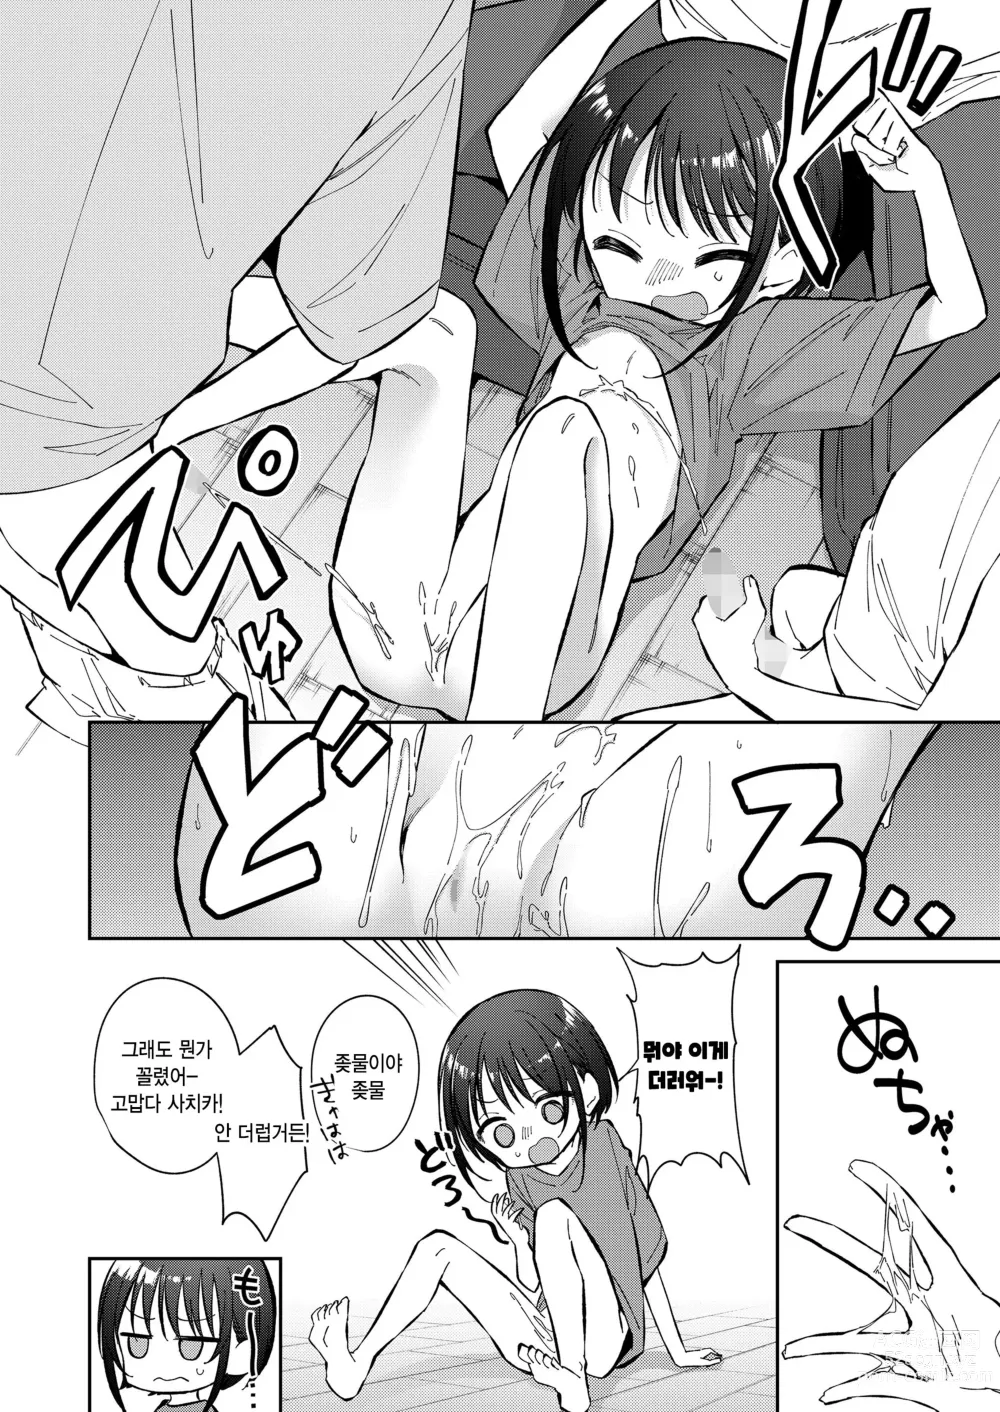 Page 14 of manga Watashi ga iki wo shiteru basho